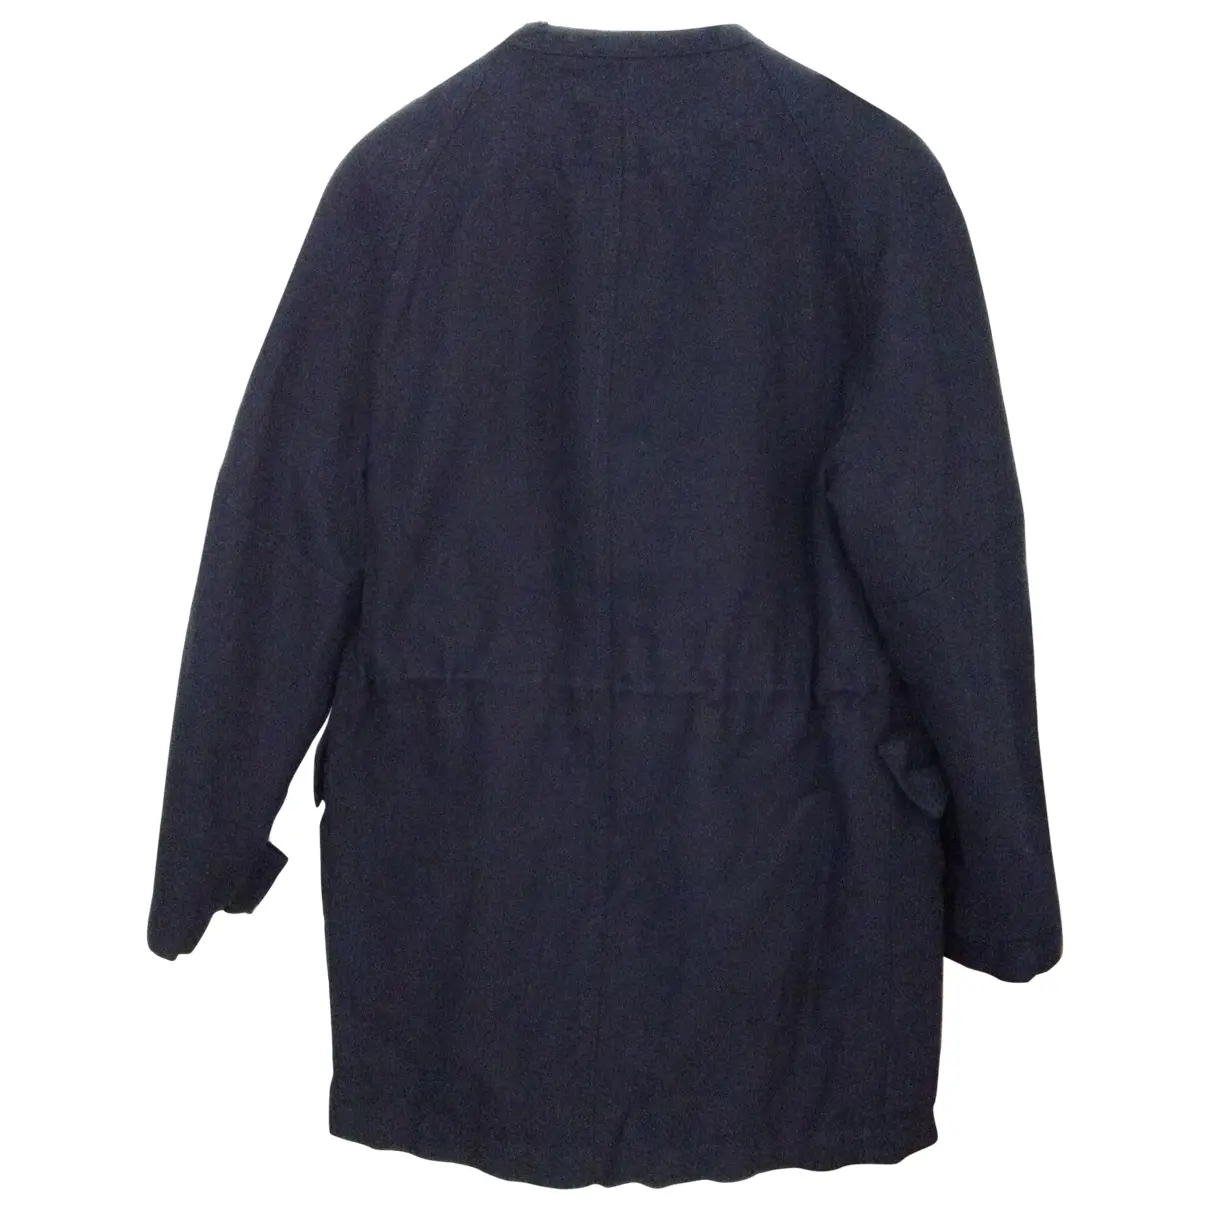 Buy Isabel Marant Etoile Black Cotton Jacket online